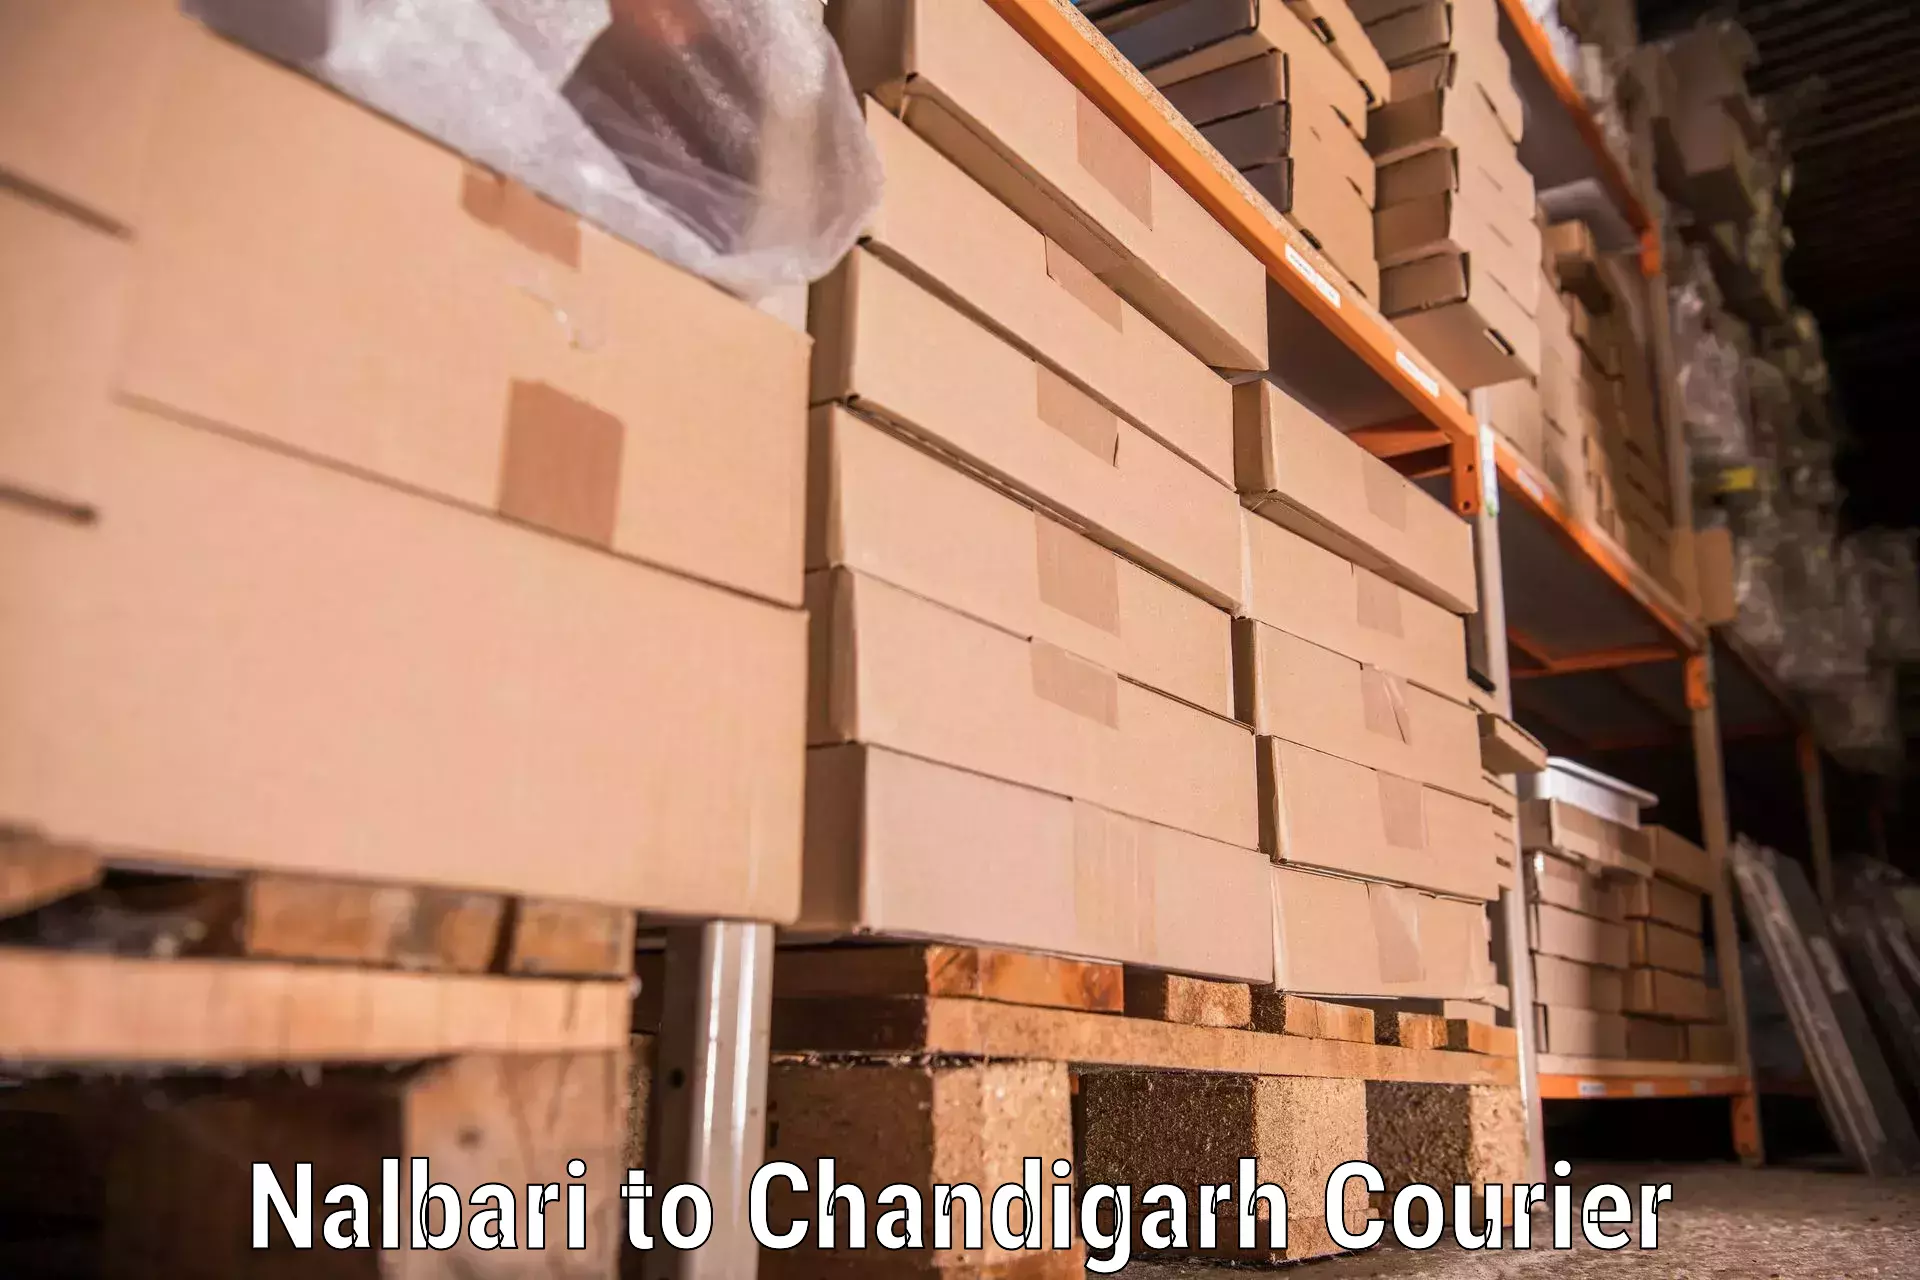 Efficient home goods movers in Nalbari to Chandigarh